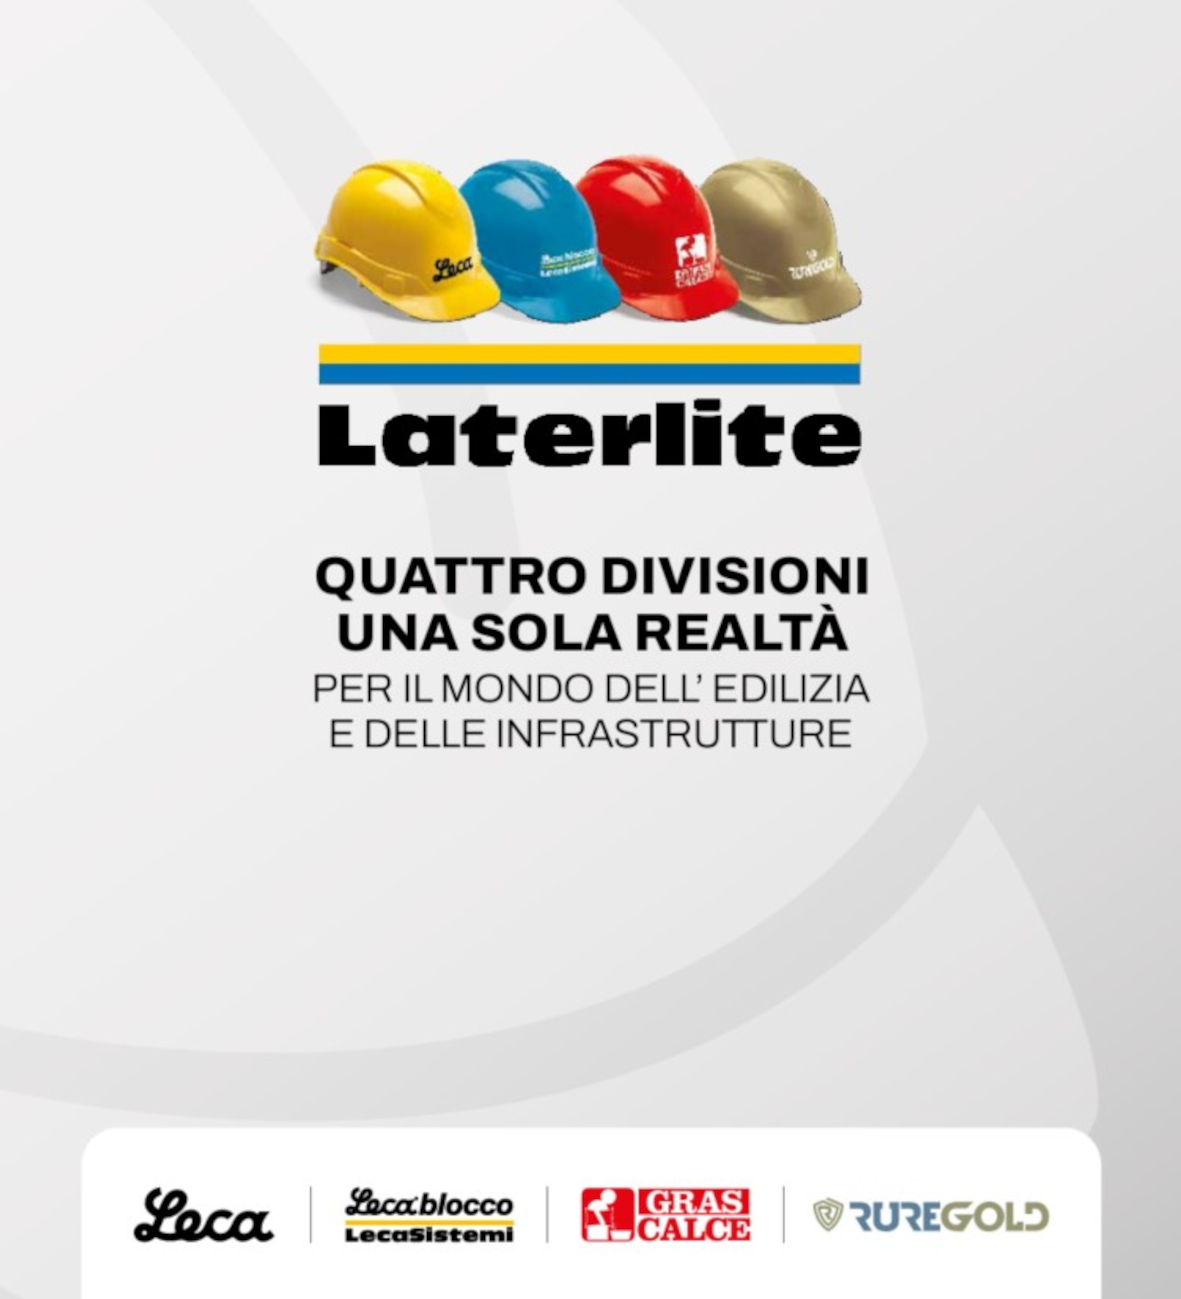 Laterlite S.p.a. - 4 brand una sola realtà - per edilizia e infrastrutture